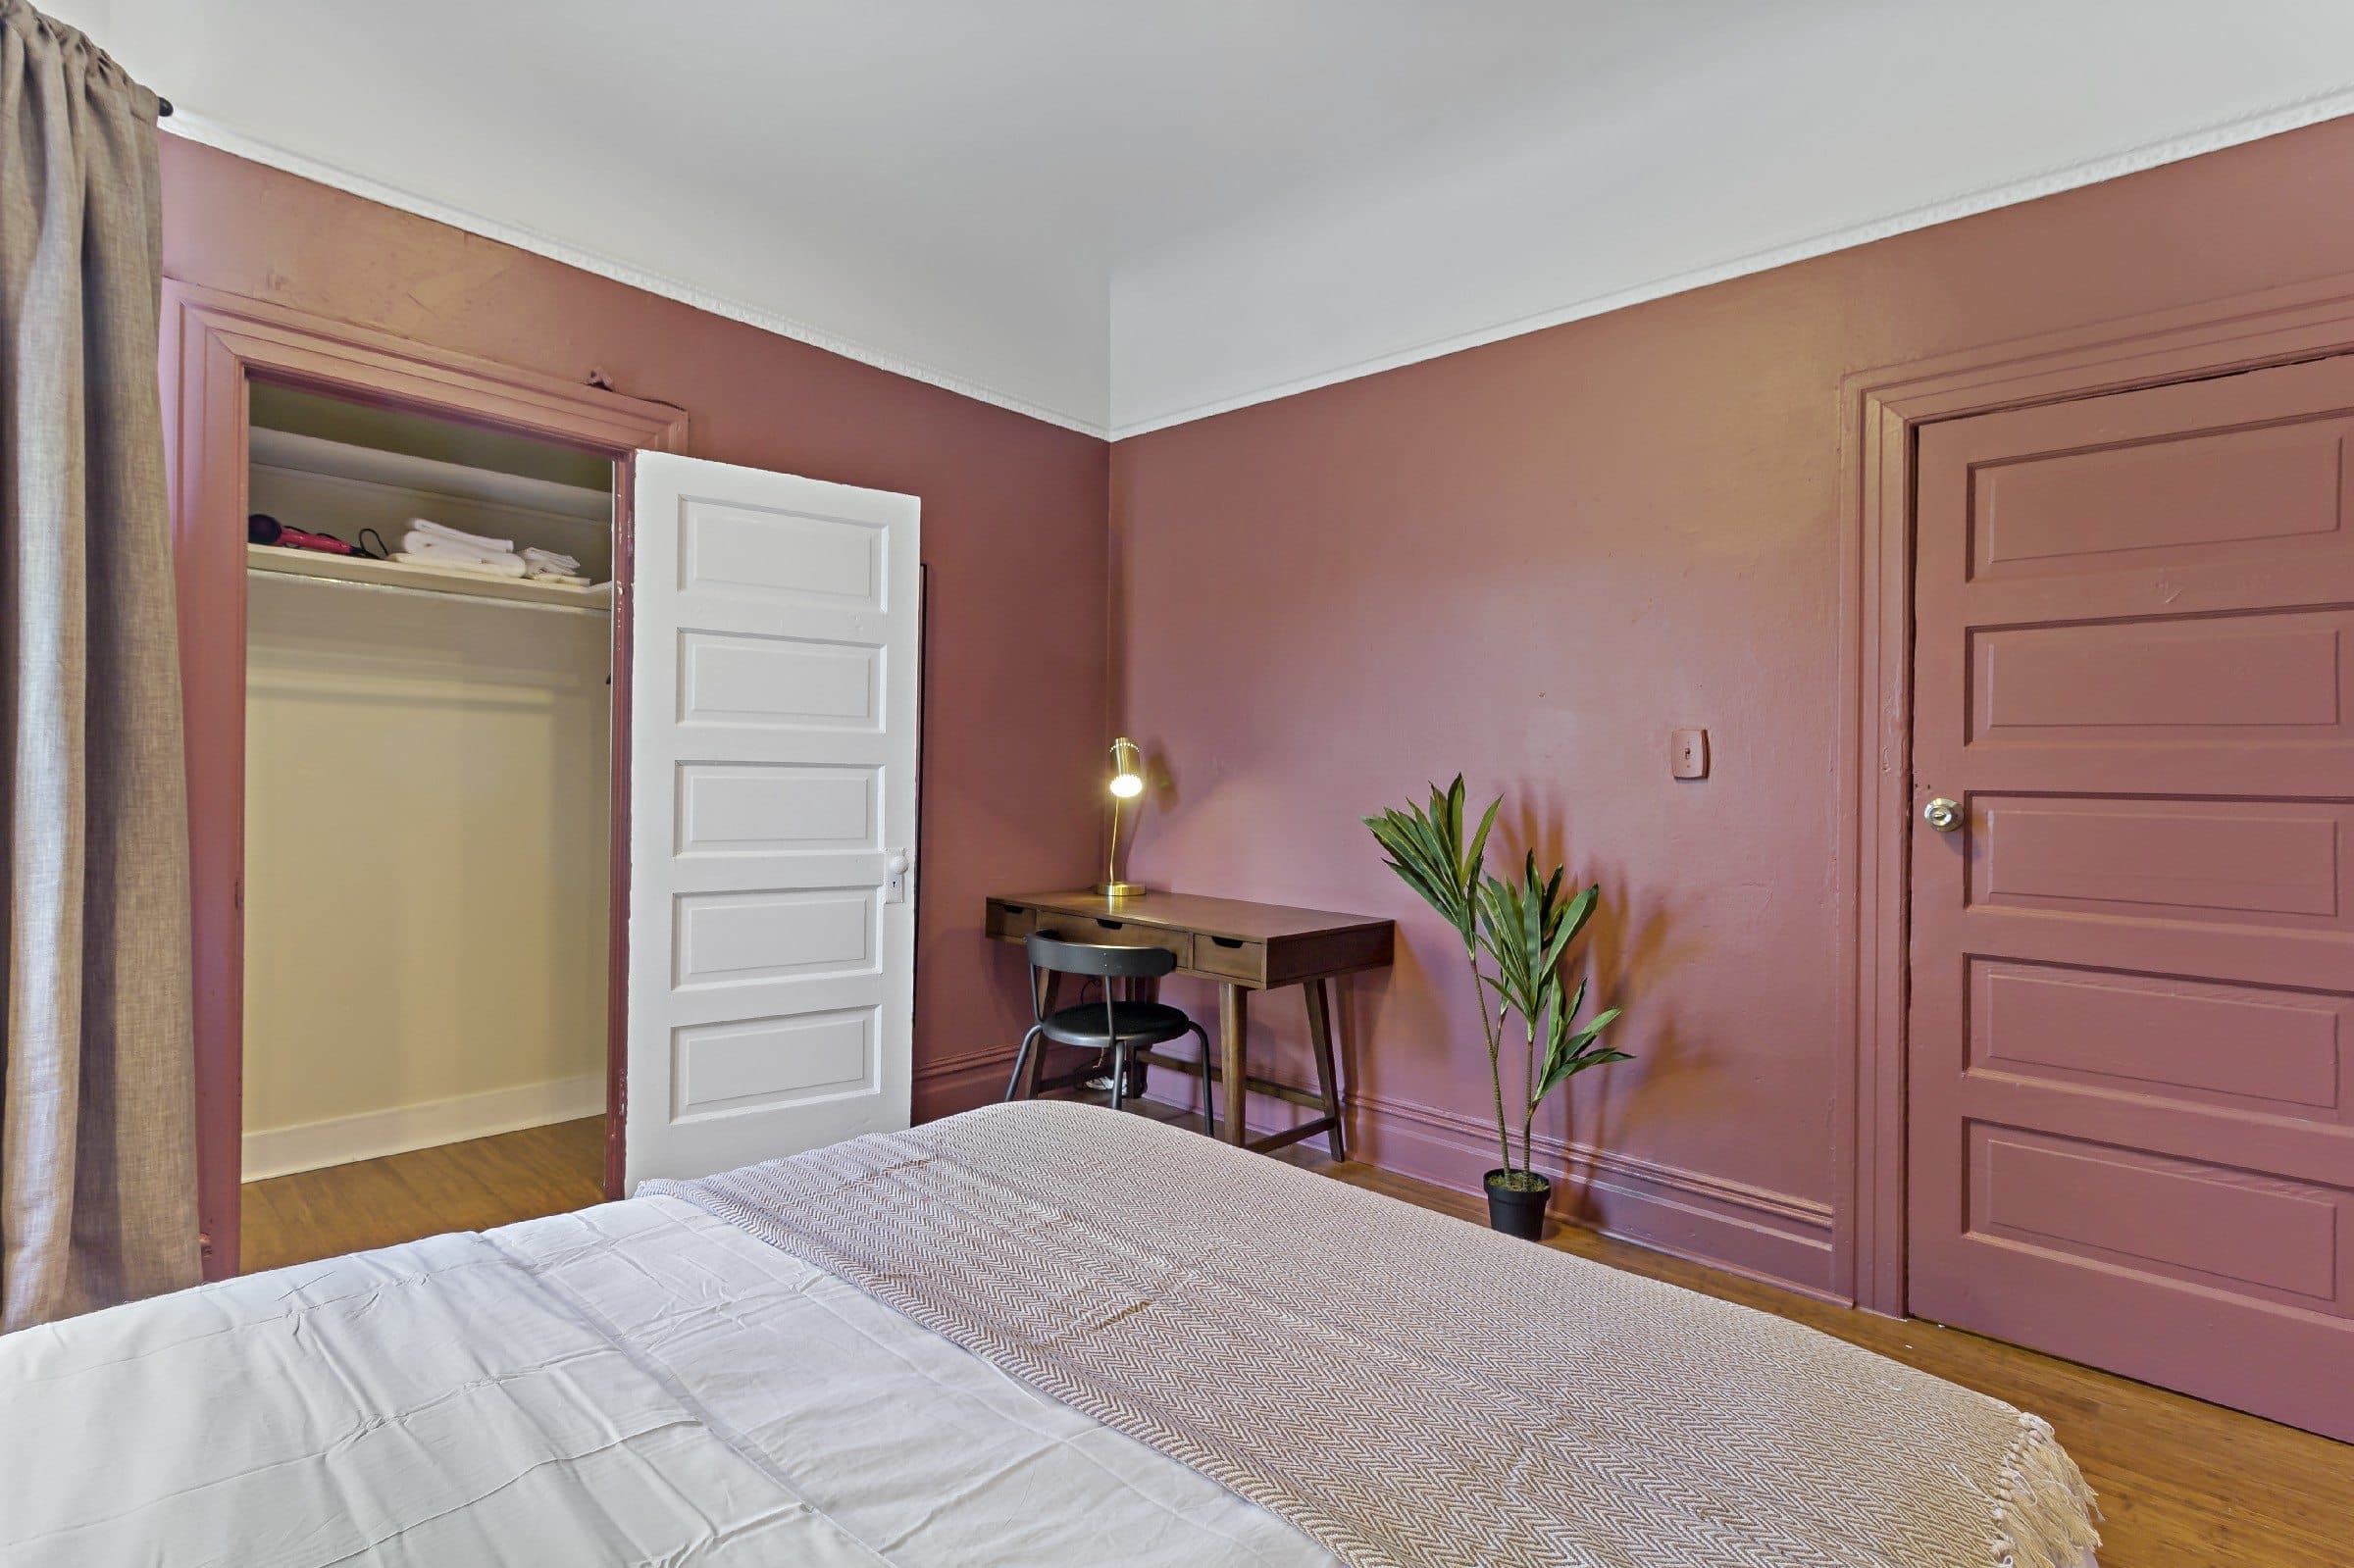 Photo 2 of #902: Queen Bedroom B at June Homes